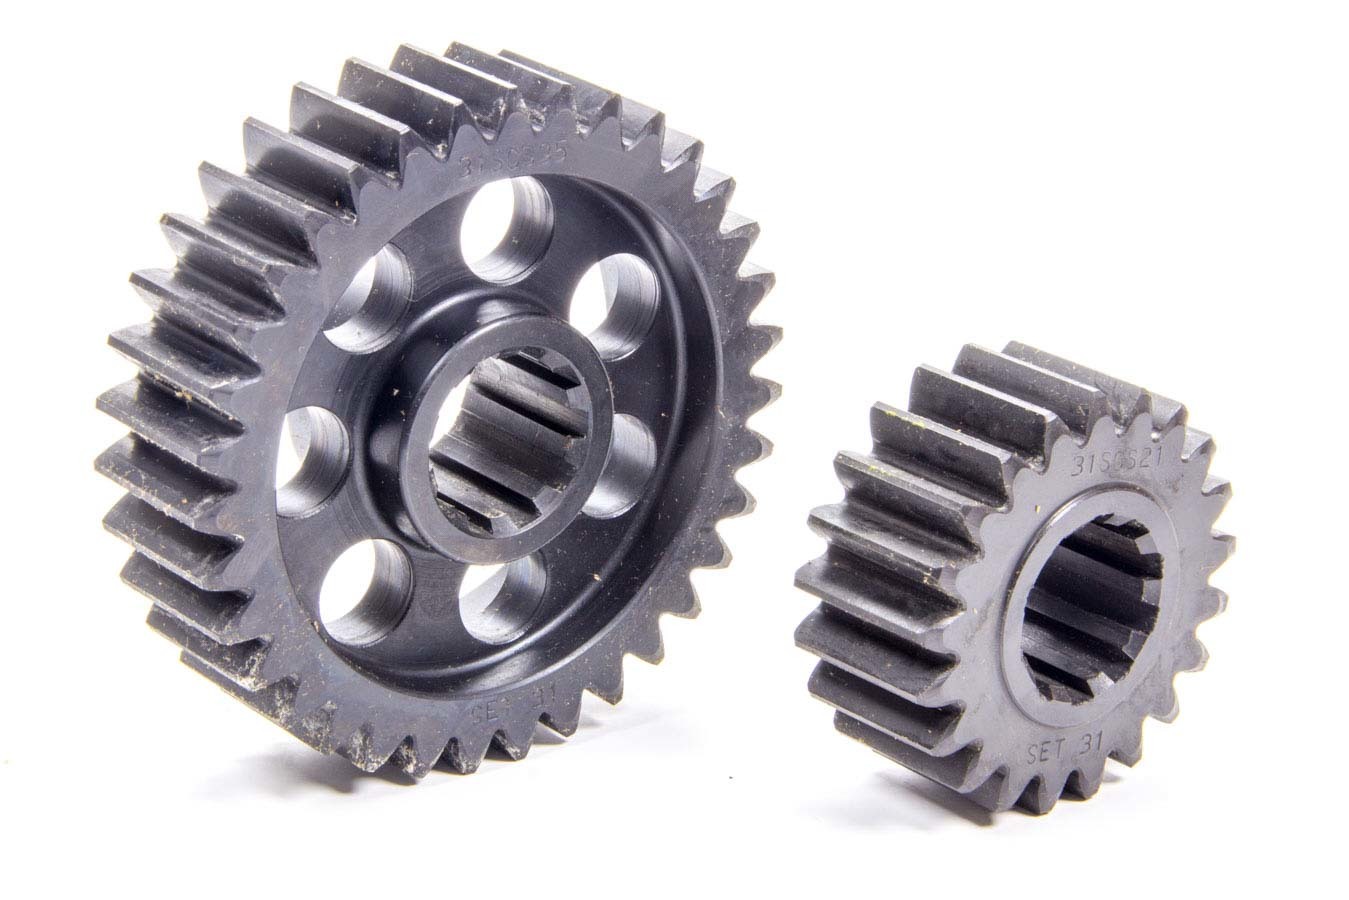 SCS Gears 31 Quick Change Gear Set, Professional, Set 31, 10 Spline, 4.11 Ratio 6.85 / 2.47, 4.86 Ratio 8.10 / 2.92, Steel, Each